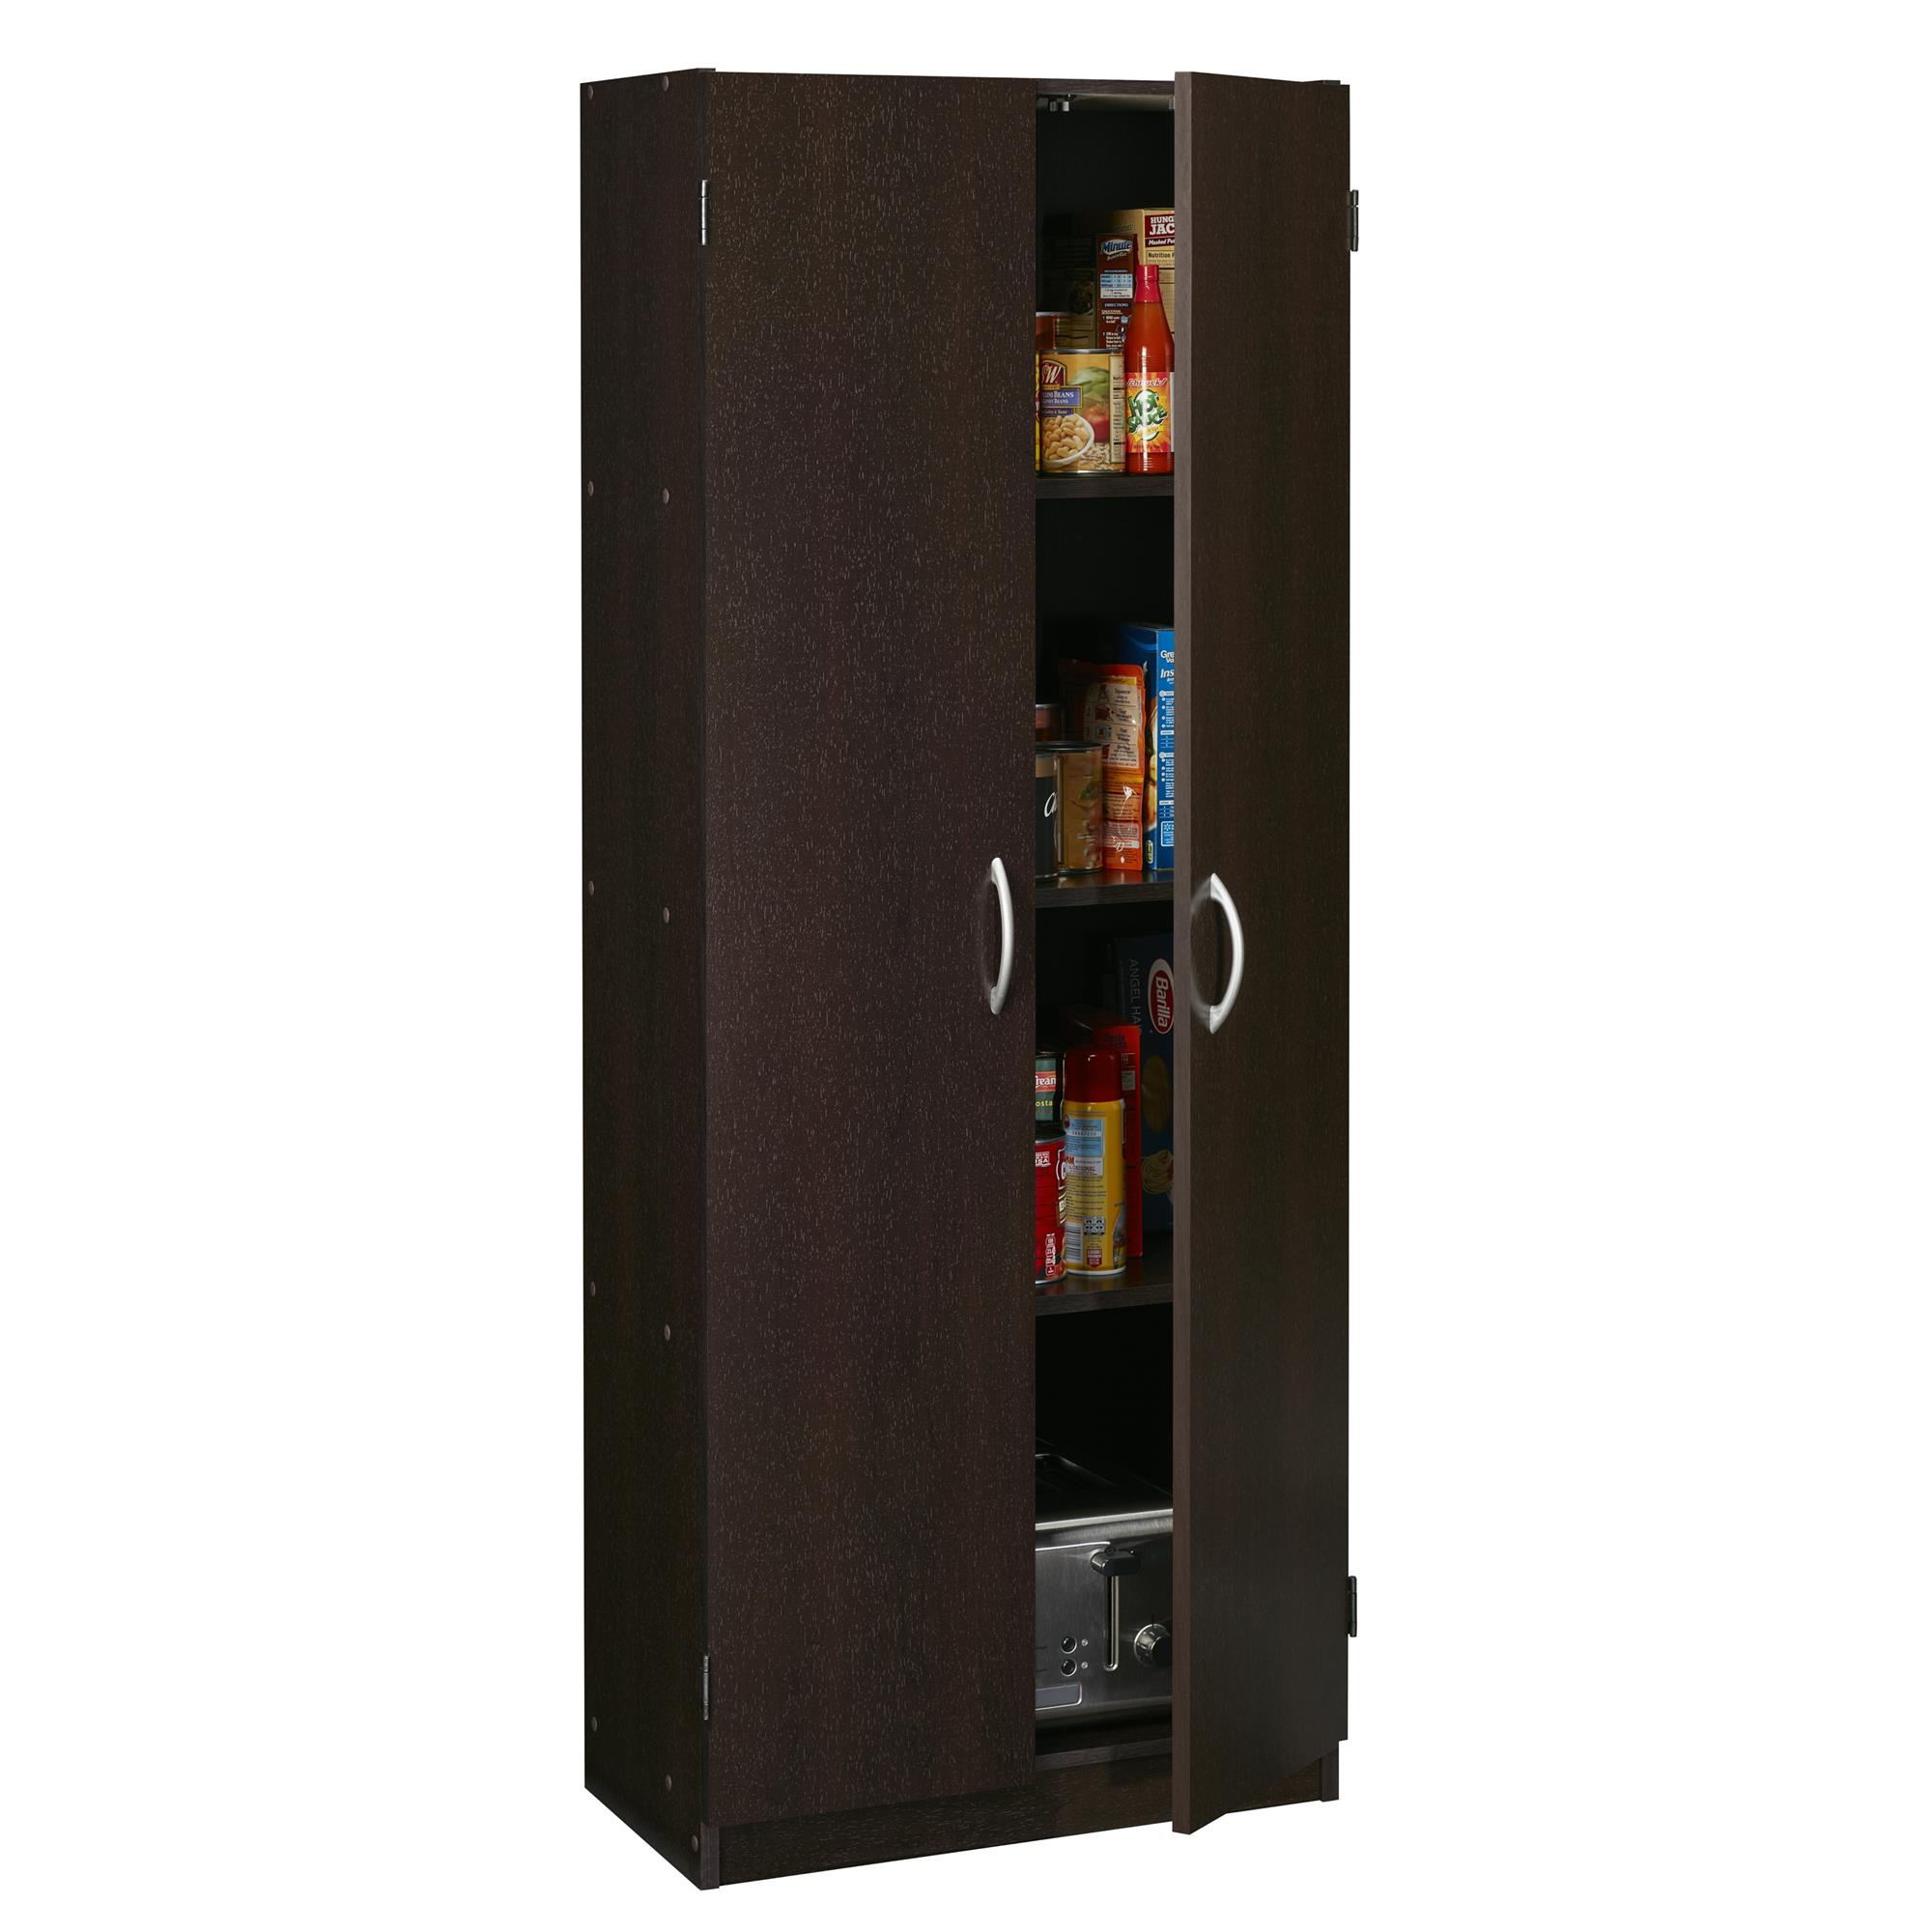 Double Door Storage Pantry, Espresso - image 2 of 6